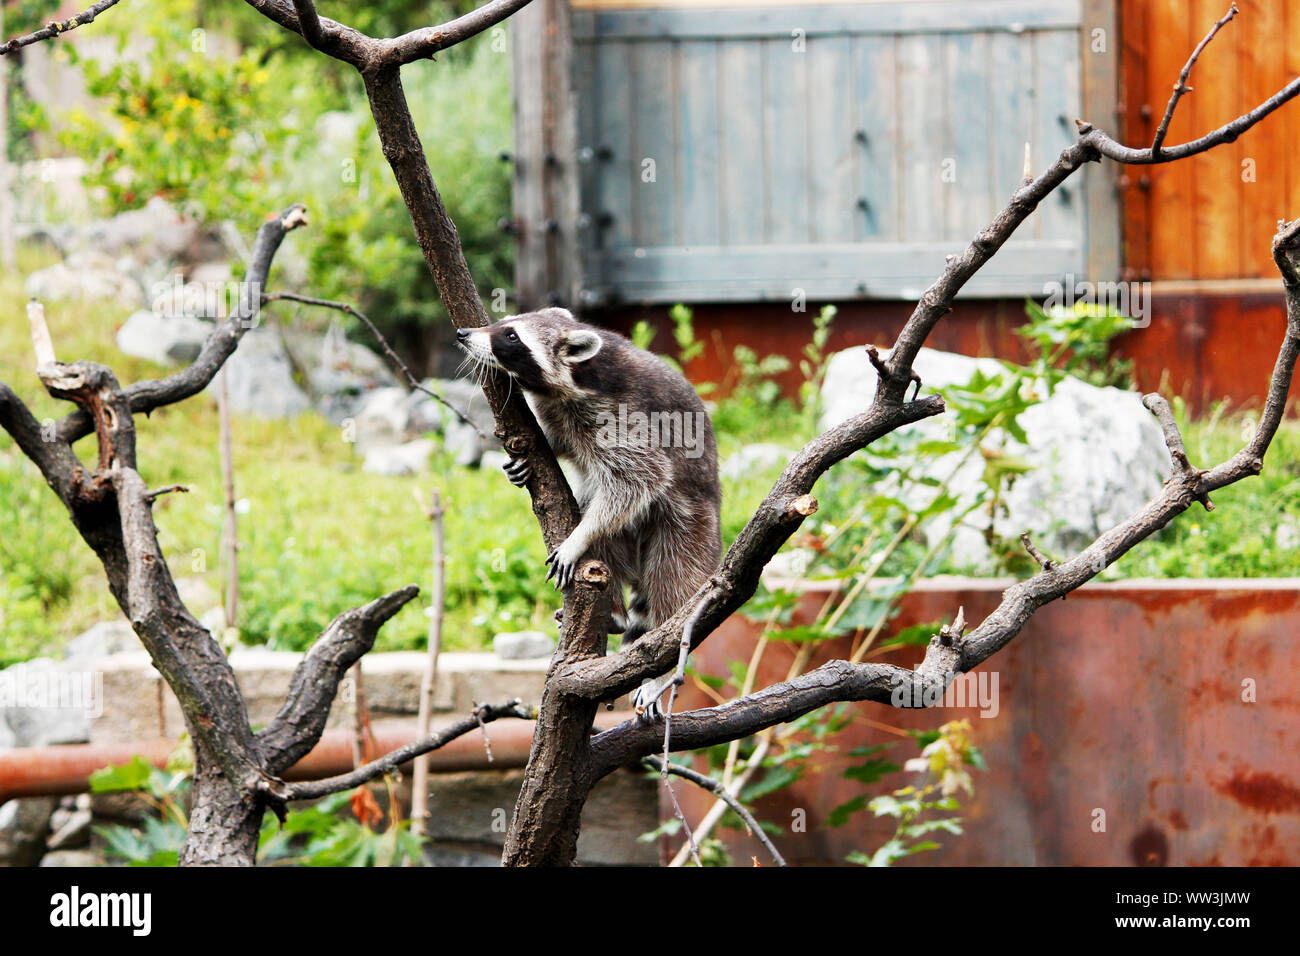 Un raton-laveur de grimper sur un arbre, Procyon lotor, également connu sous le nom de raton laveur d'Amérique du Nord Banque D'Images